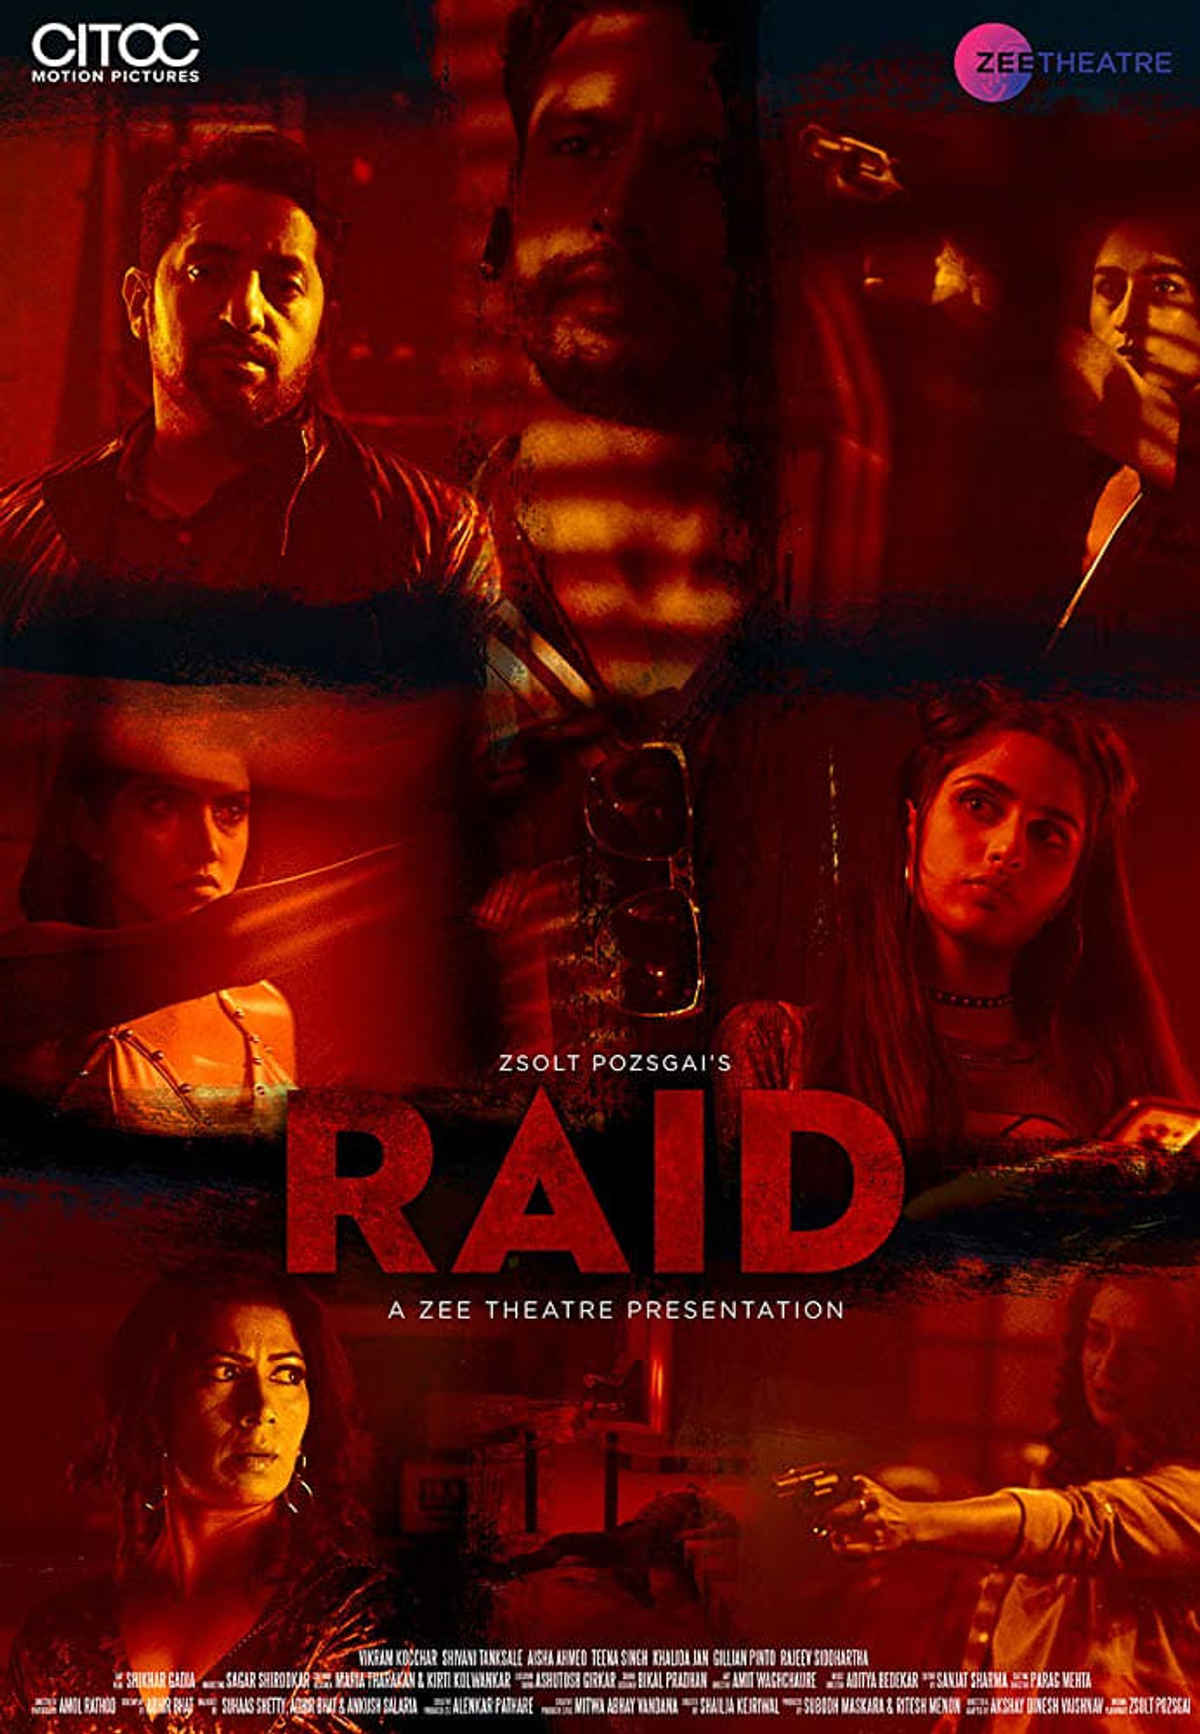 raid movie download online hd